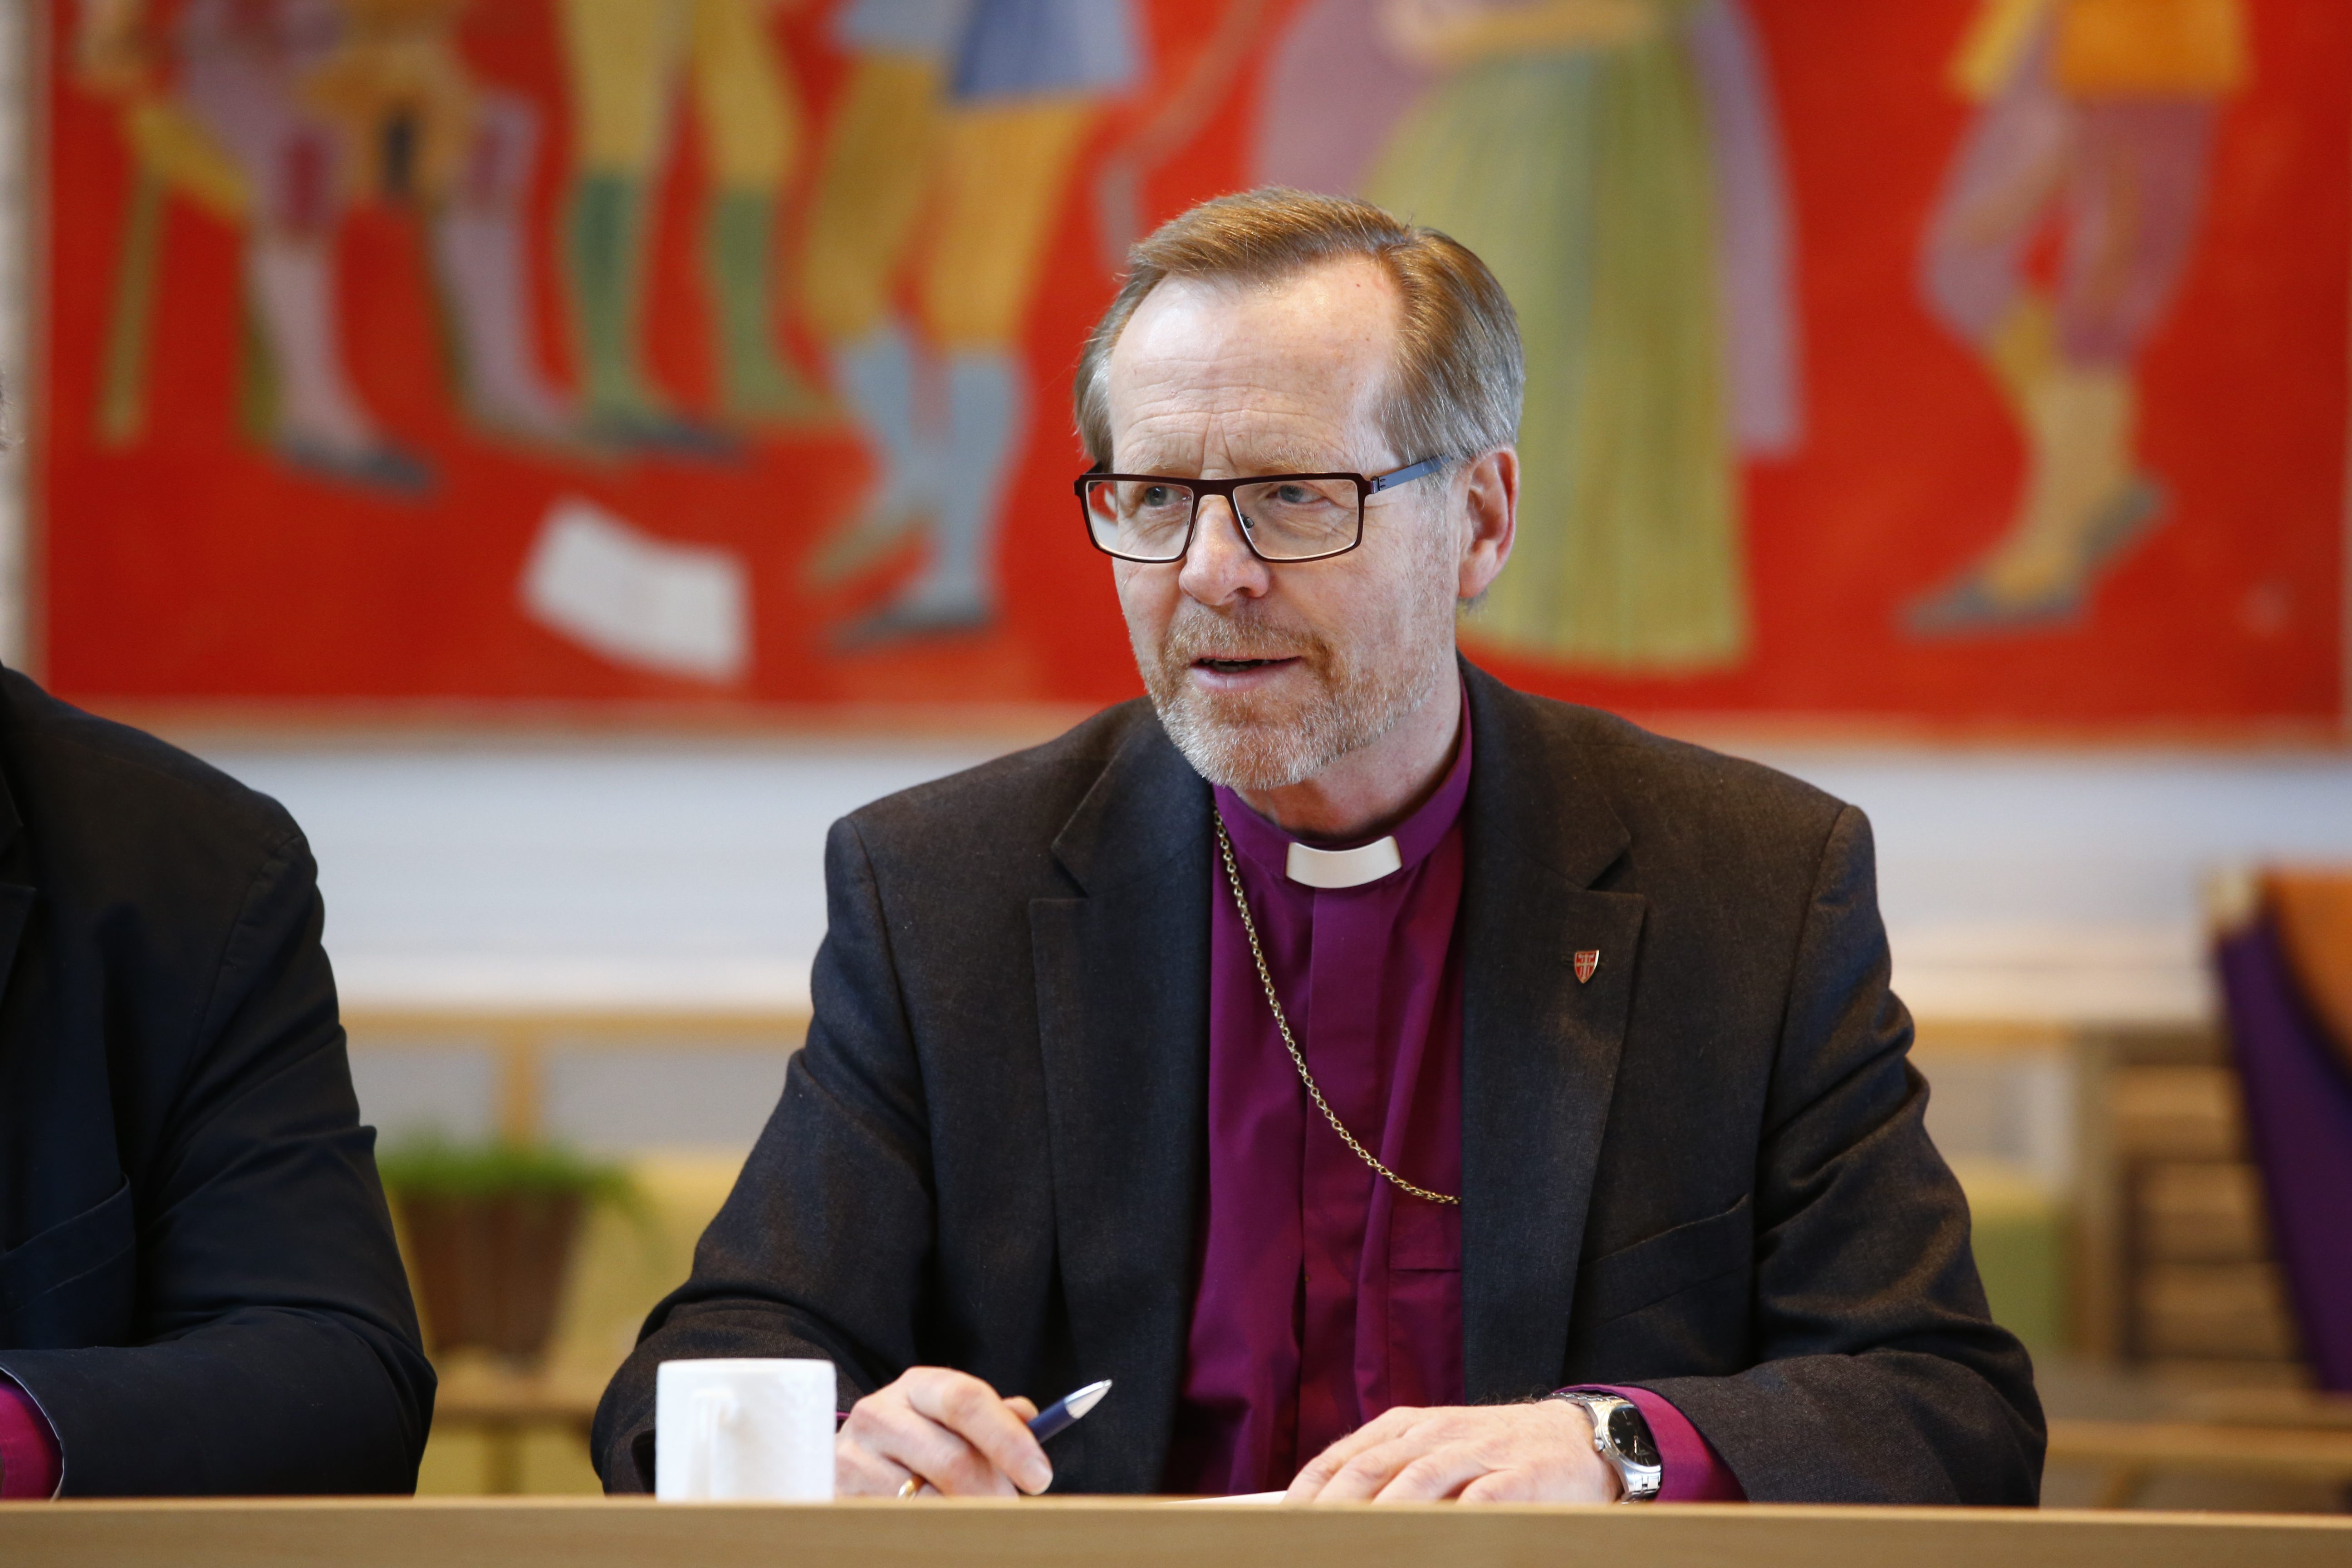 FRYKTEN: Biskop Halvor Nordhaug mener det er frykten for viruset som har ledet folk til bibelverset "Frykt ikke".